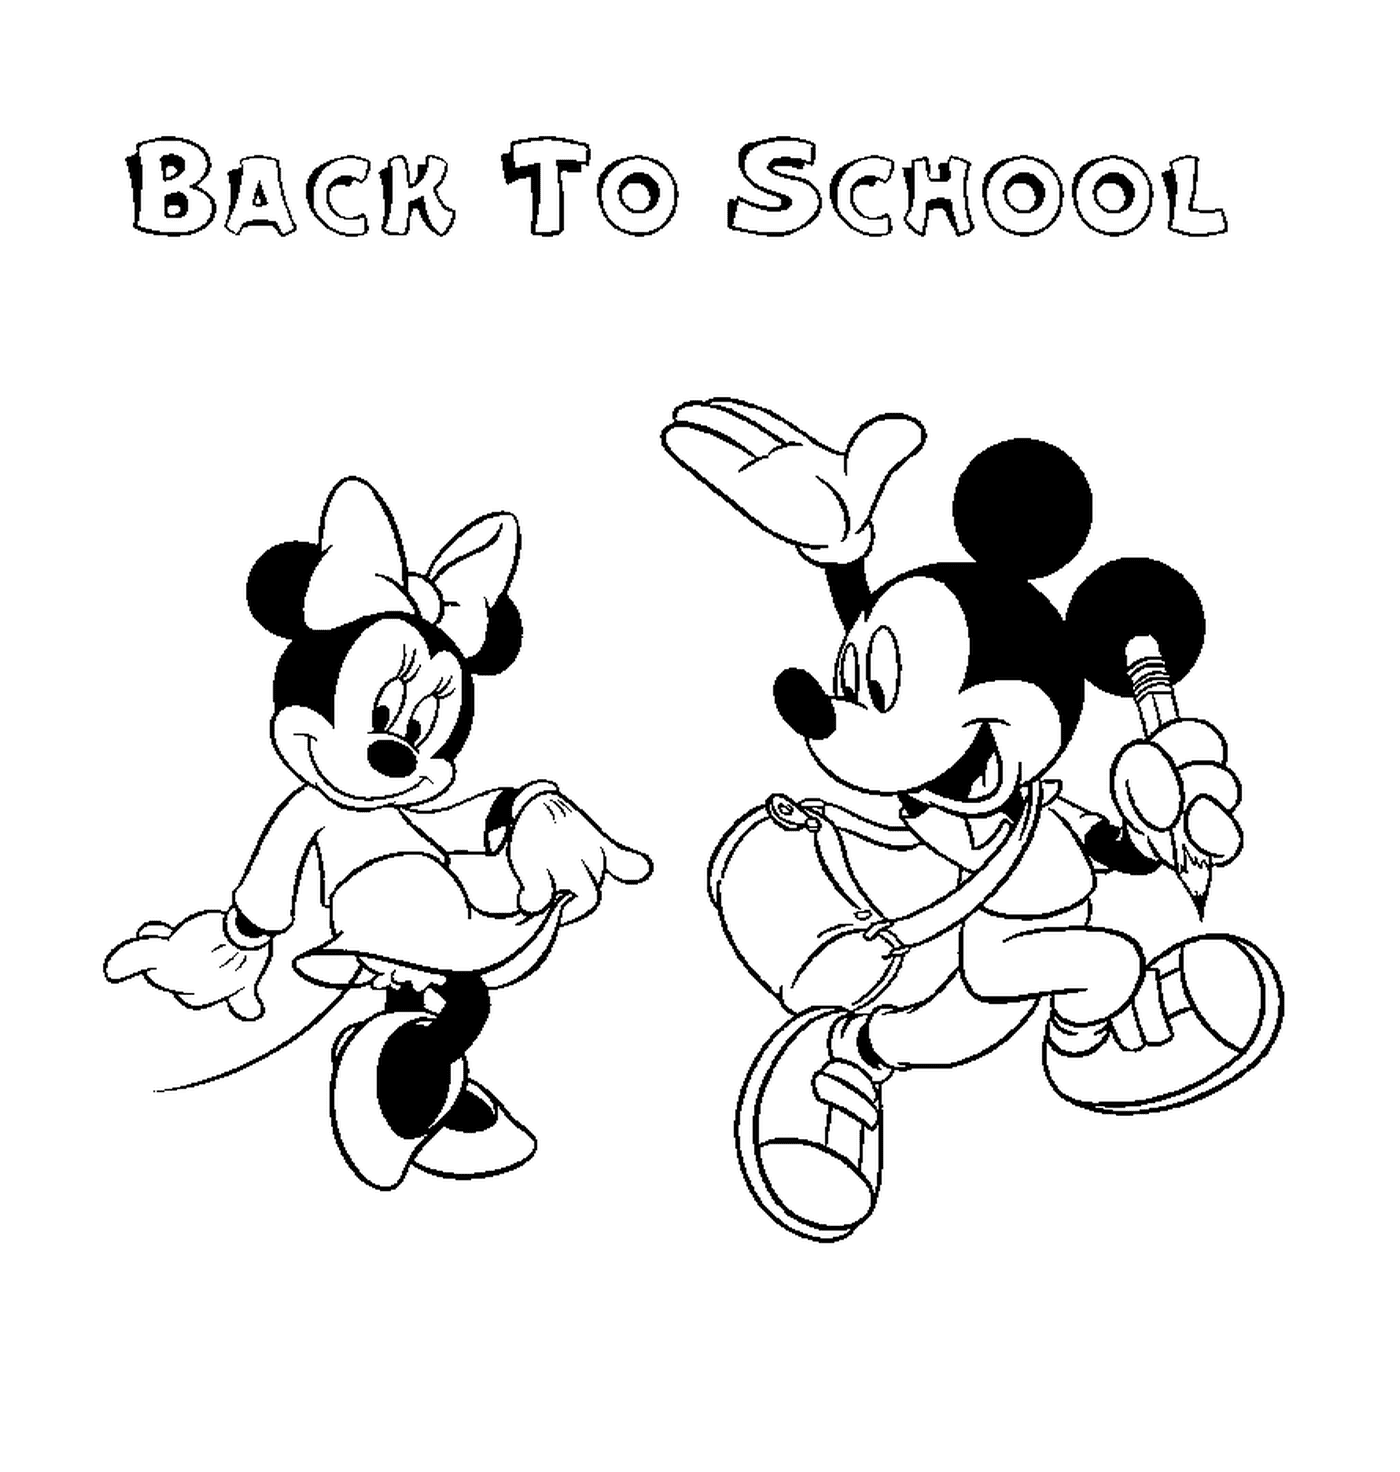  回到学校,迪士尼,米奇老鼠 